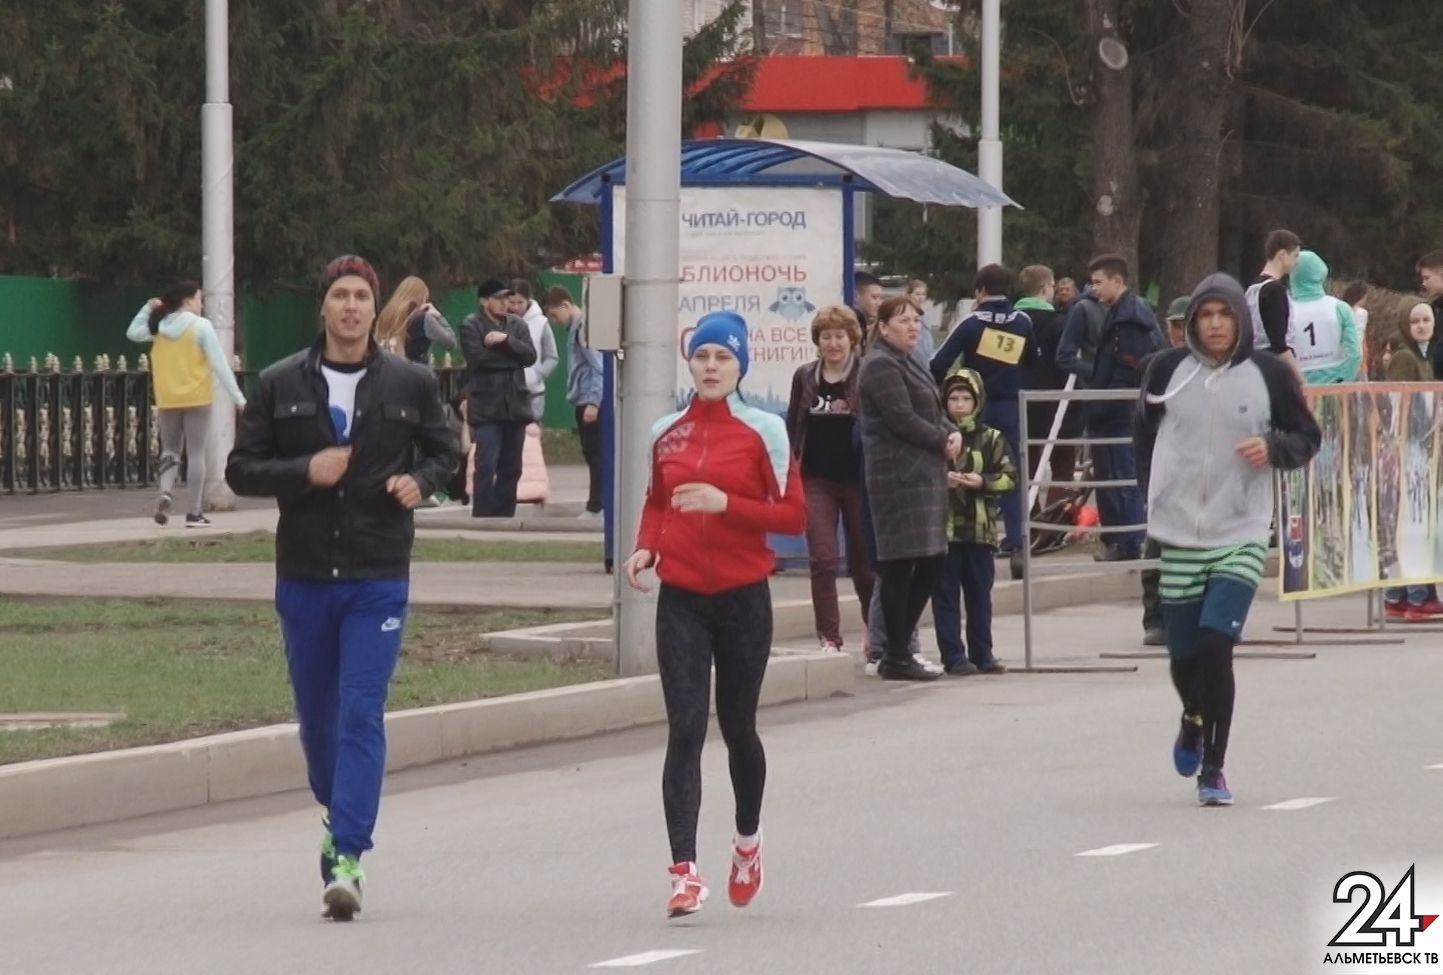 Минниханов пожелал за год увеличить число участников Казанского марафона втрое